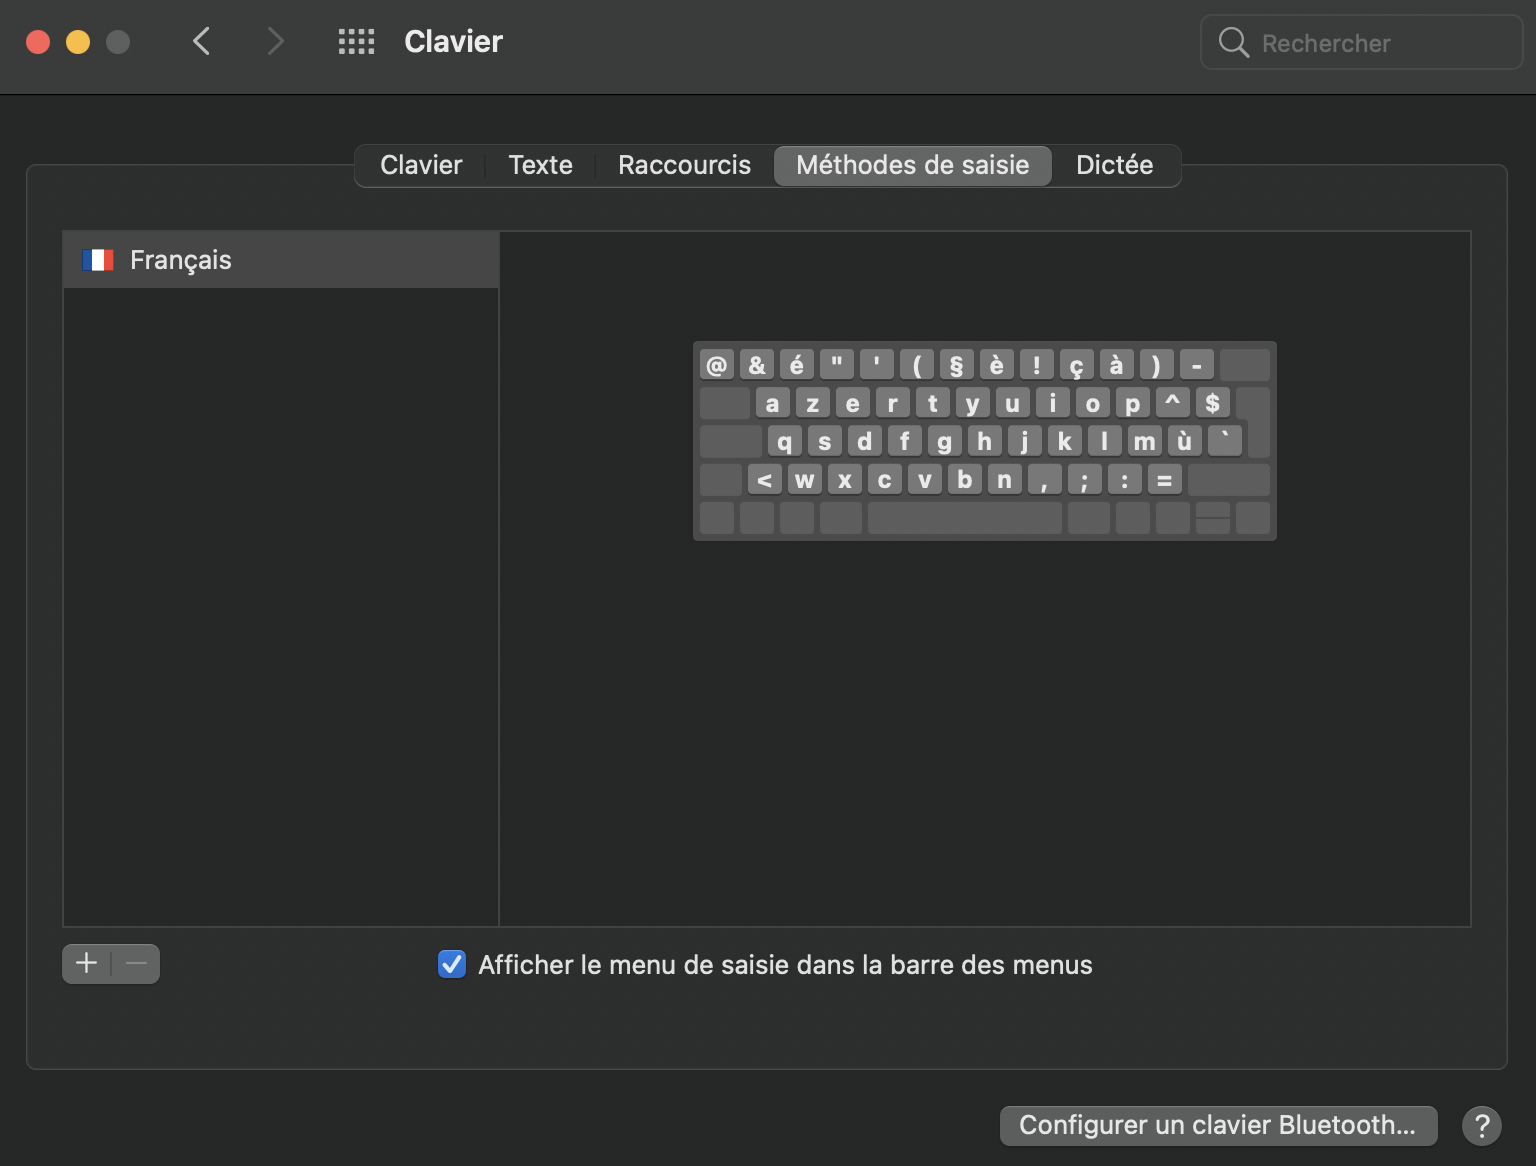 Configurer l'affichage du clavier dans la barre des menus.